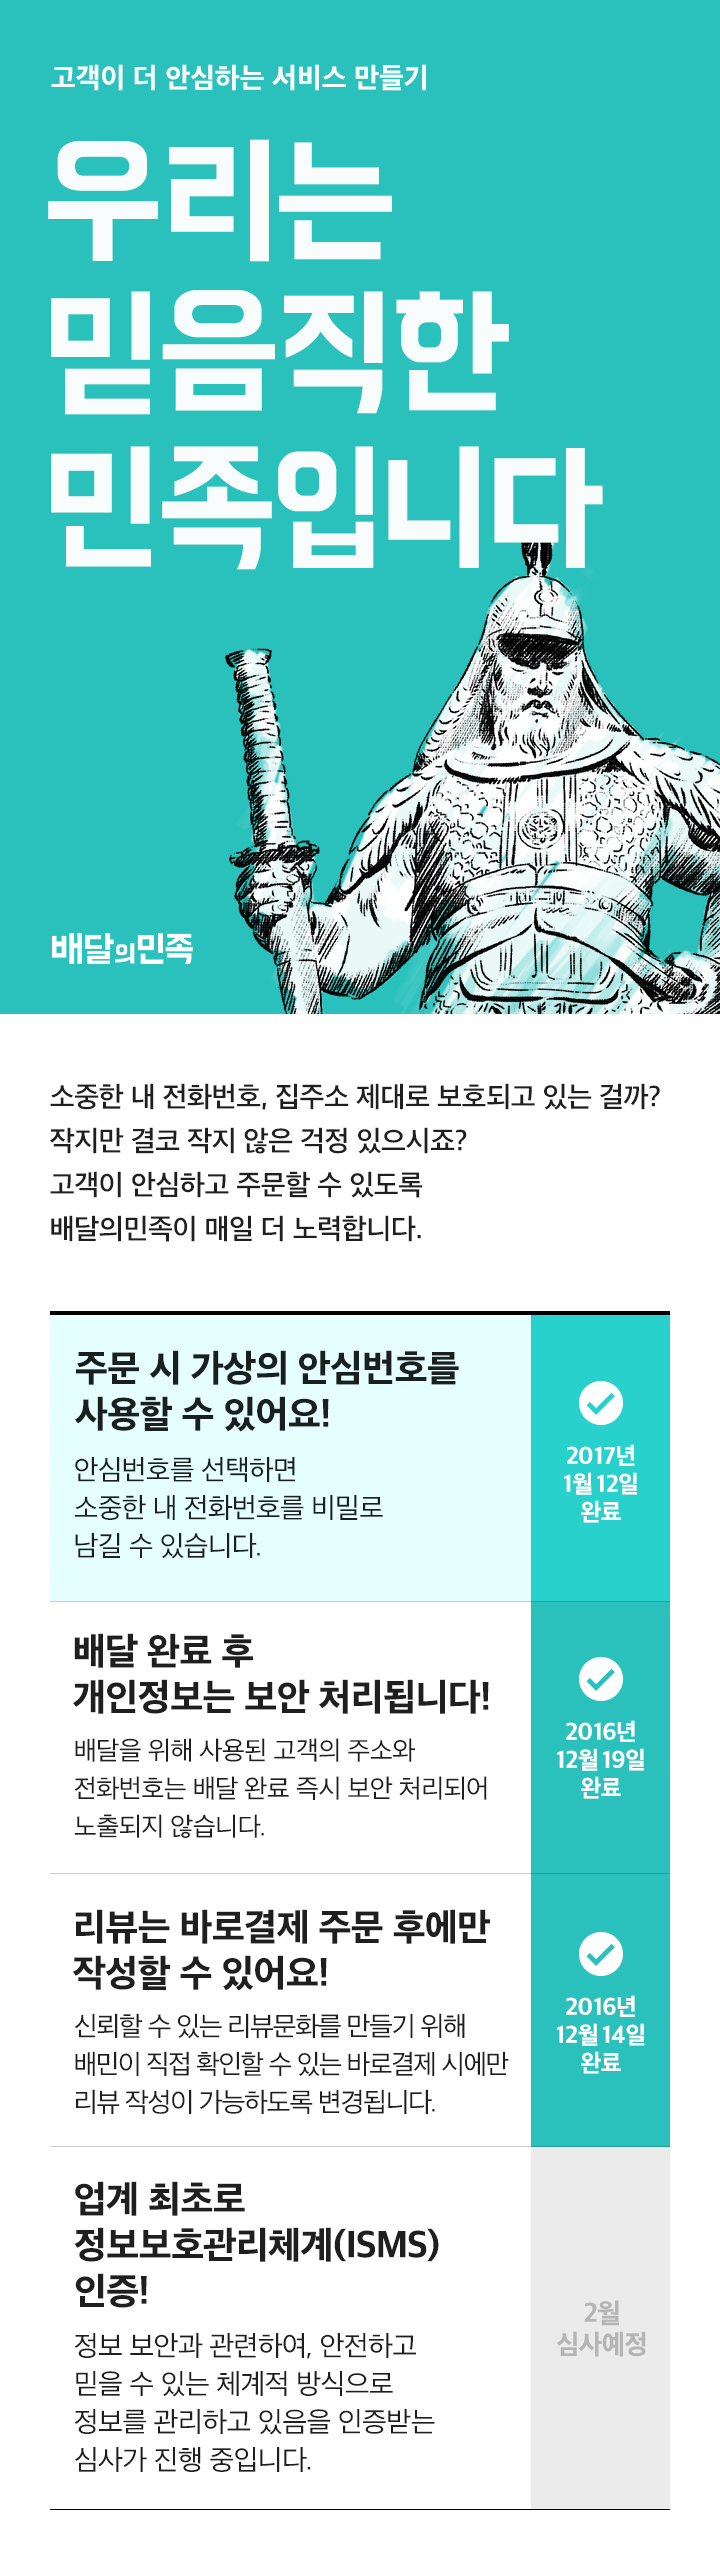 배달의민족, 배달앱 최초 ‘고객 안심번호’ 도입